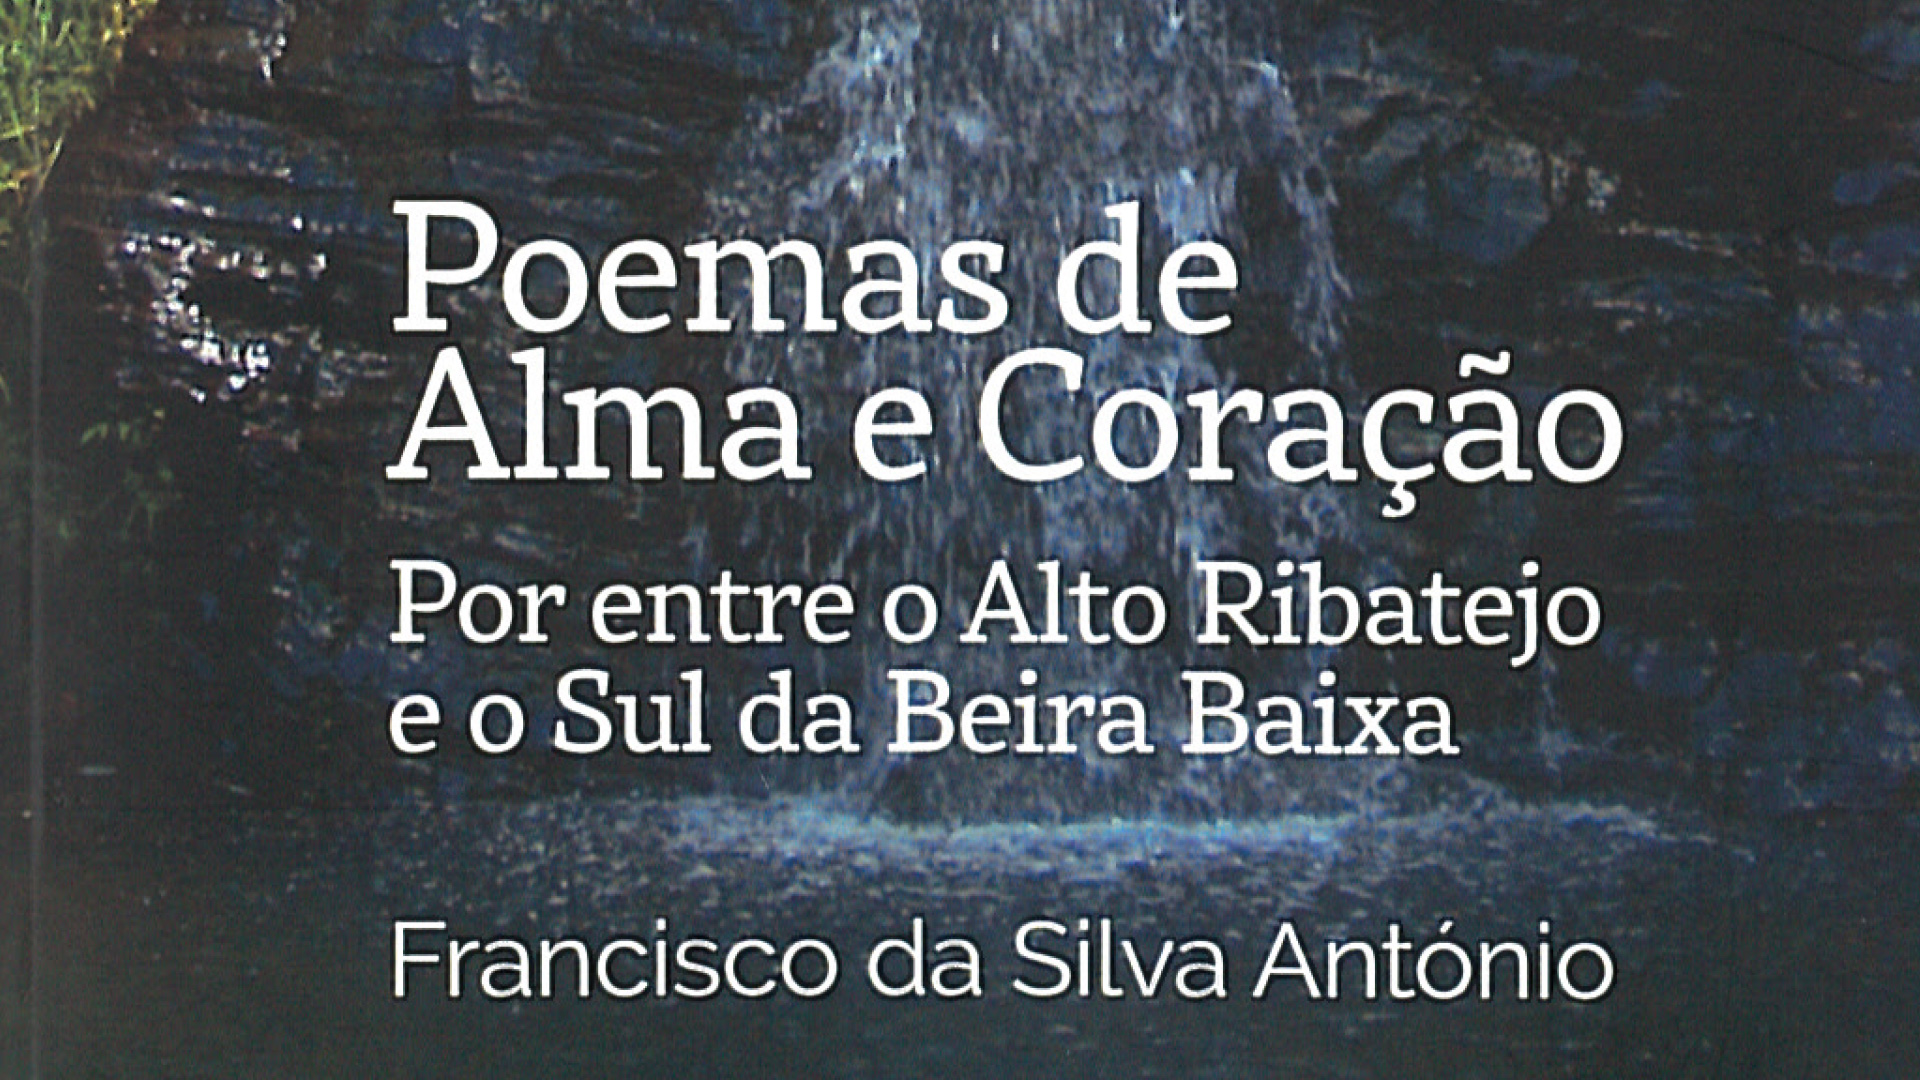 Livro “Poemas de Alma e Coração”, de Francisco António, apresentado no Auditório Municipal